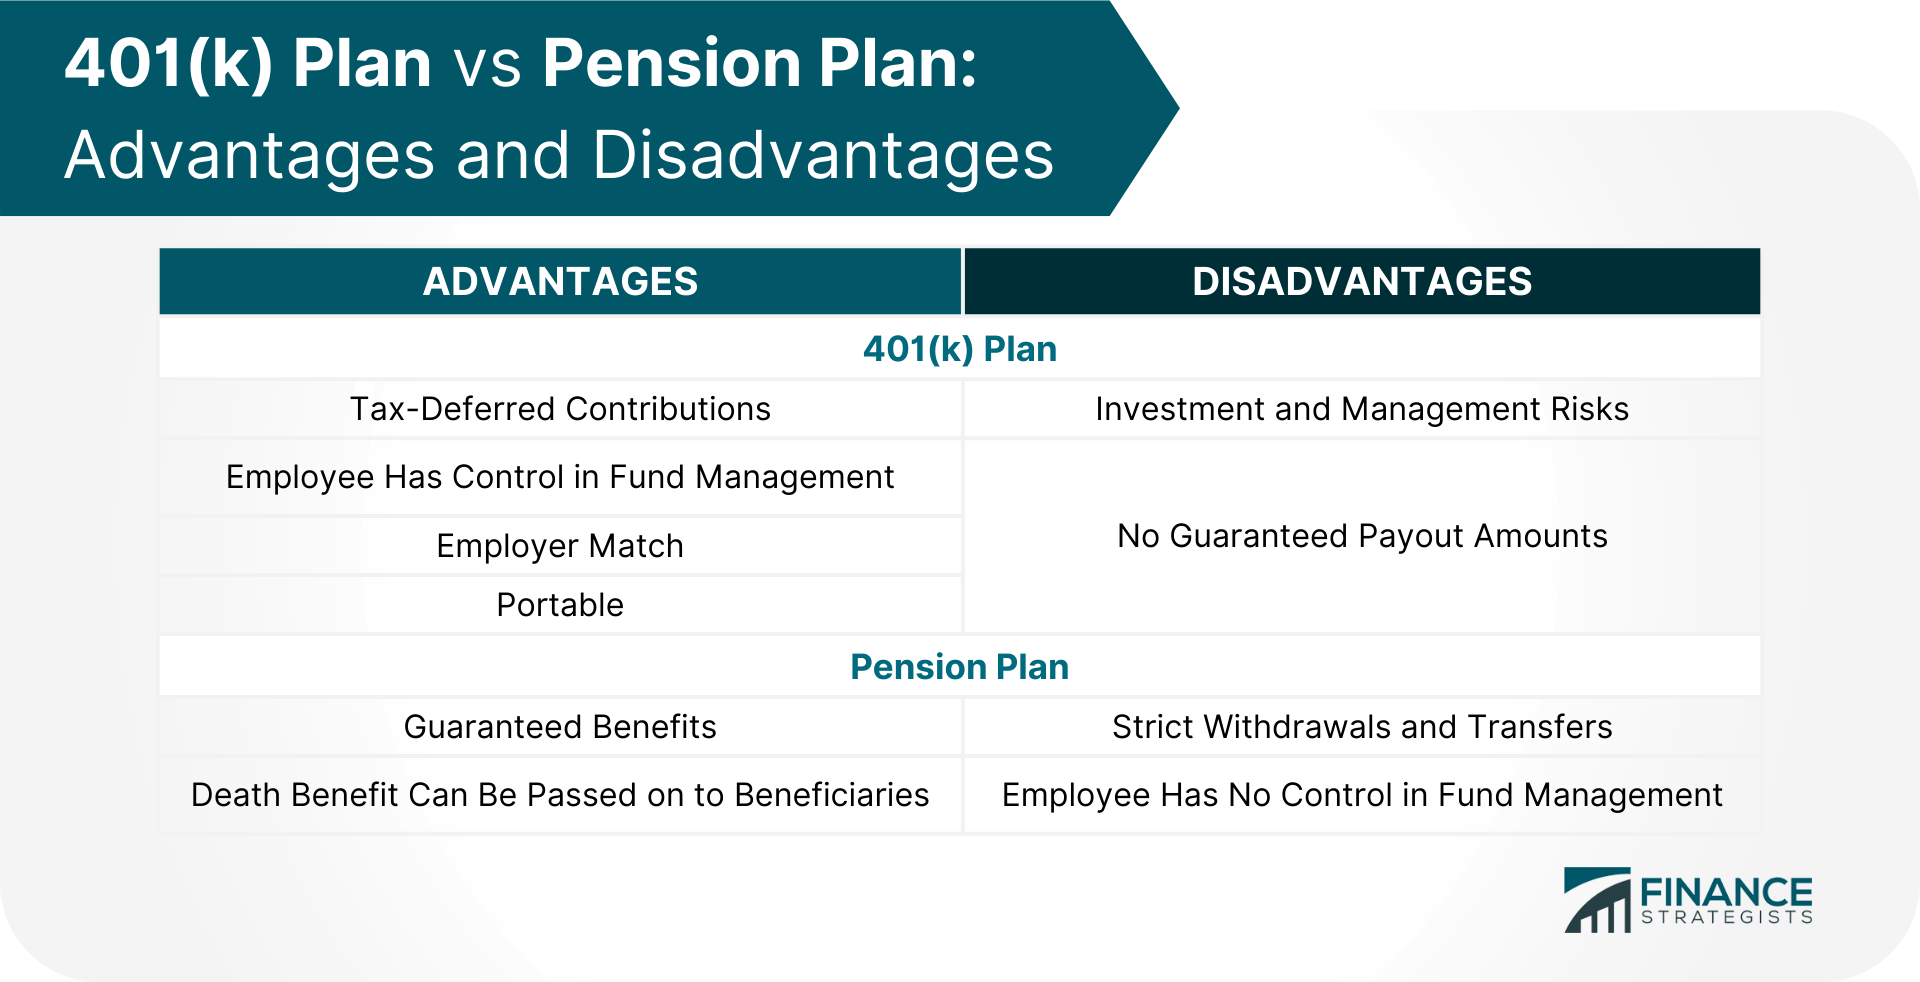 401(k) Plan vs Pension Plan Advantages and Disadvantages